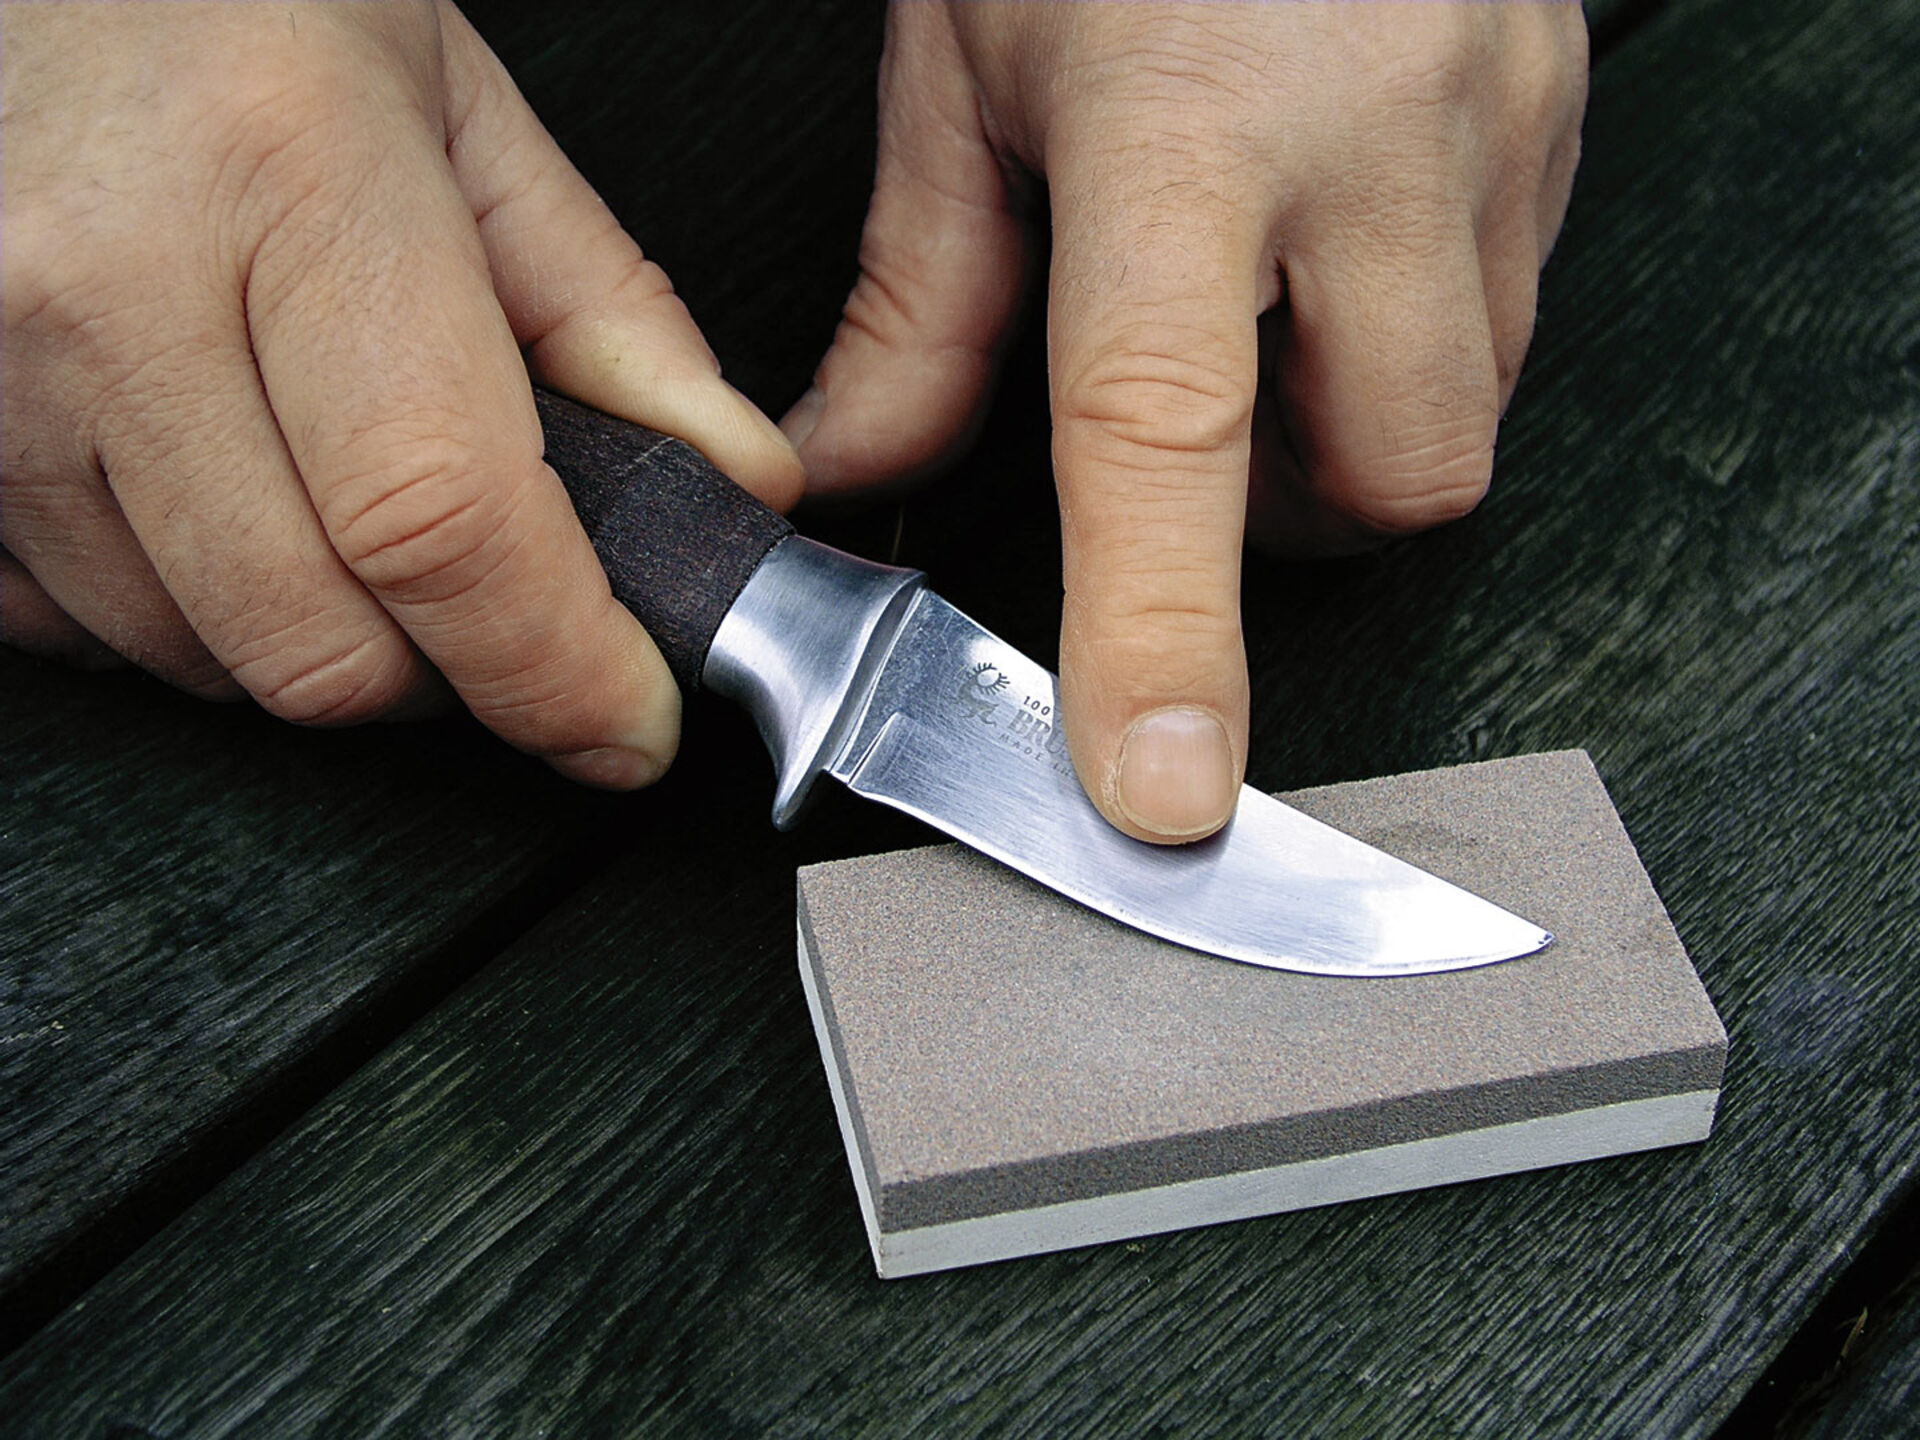  Das Messer sollte man in Form einer Acht bewegen – zunächst auf rauem Stein, dann auf feinkörniger Fläche. Der abgebildete Stein bietet beides.  